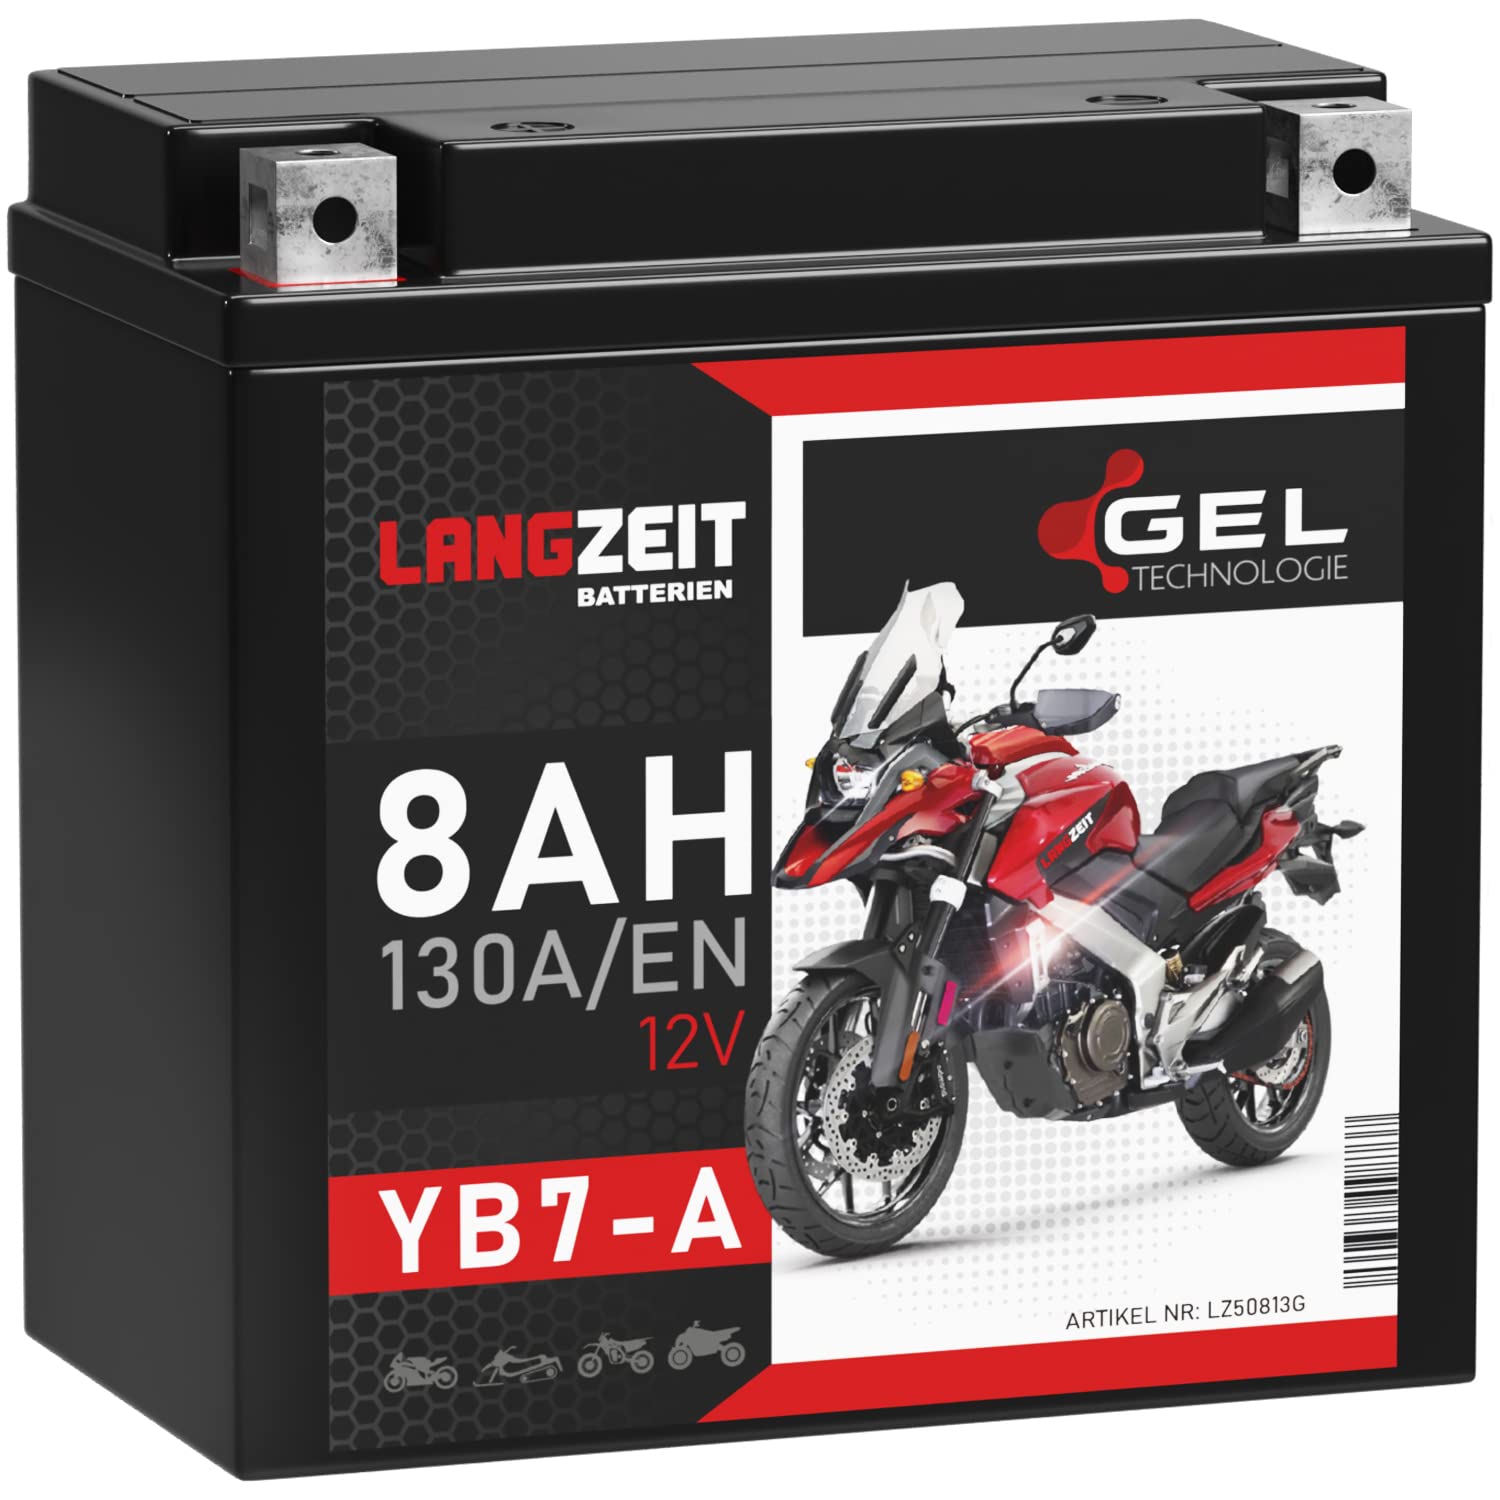 LANGZEIT YB7-A Motorradbatterie 12V 8Ah 130A/EN GEL Batterie 12V 50813 12N7-4A doppelte Lebensdauer vorgeladen auslaufsicher wartungsfrei von LANGZEIT Batterien